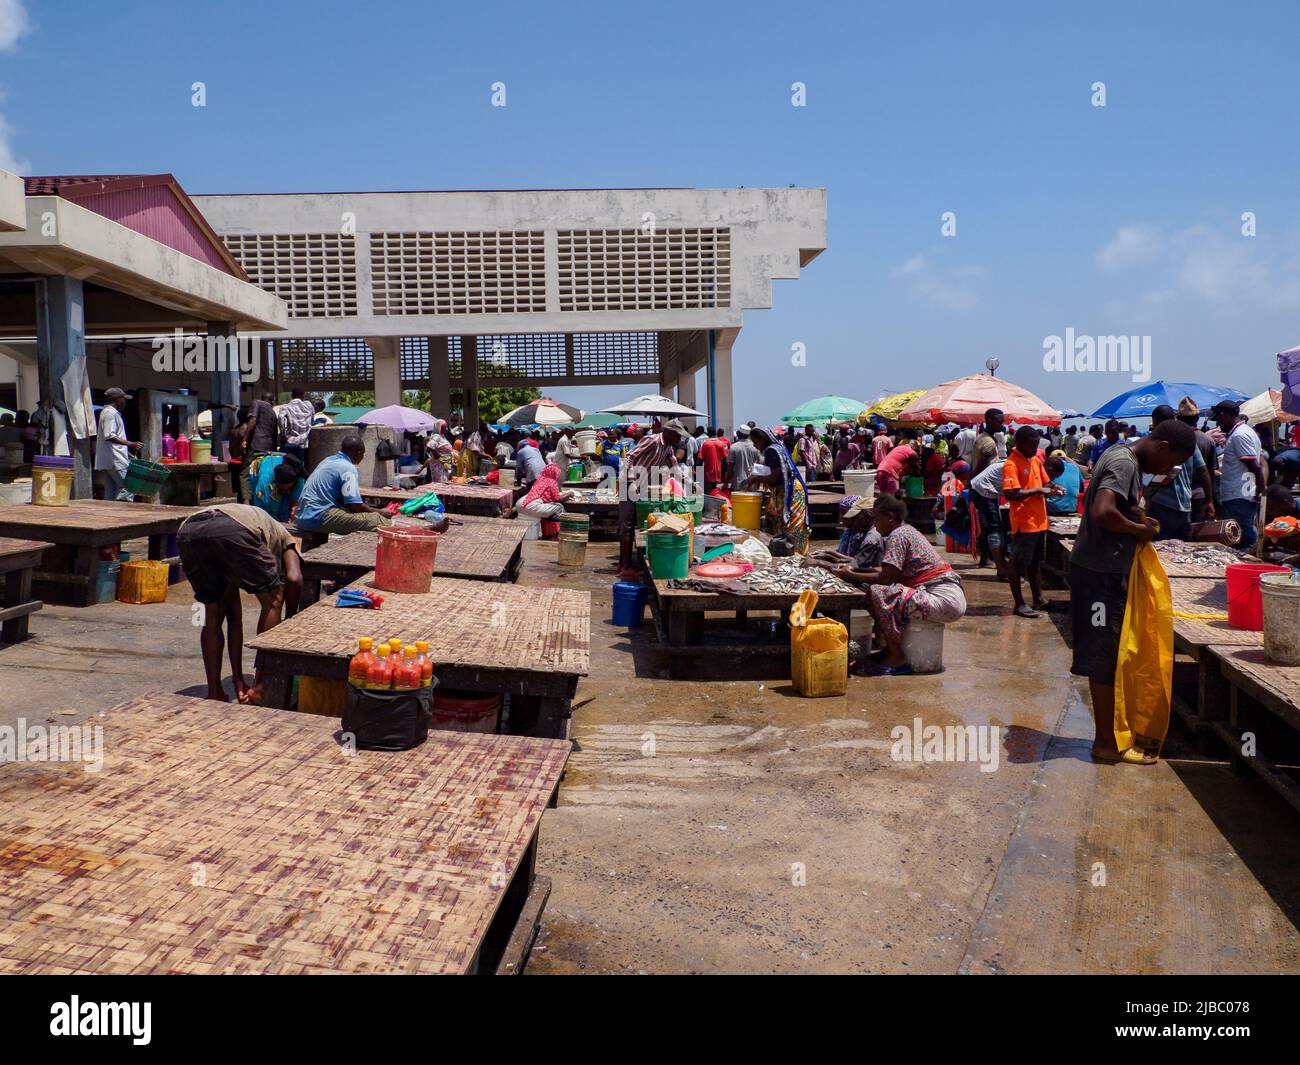 Dar es Salaam, Tansania - Februar 2021: Eine Menge afrikanischer Fischer auf dem Kivukoni Fischmarkt. Kovidische Zeit in Afrika. Stockfoto